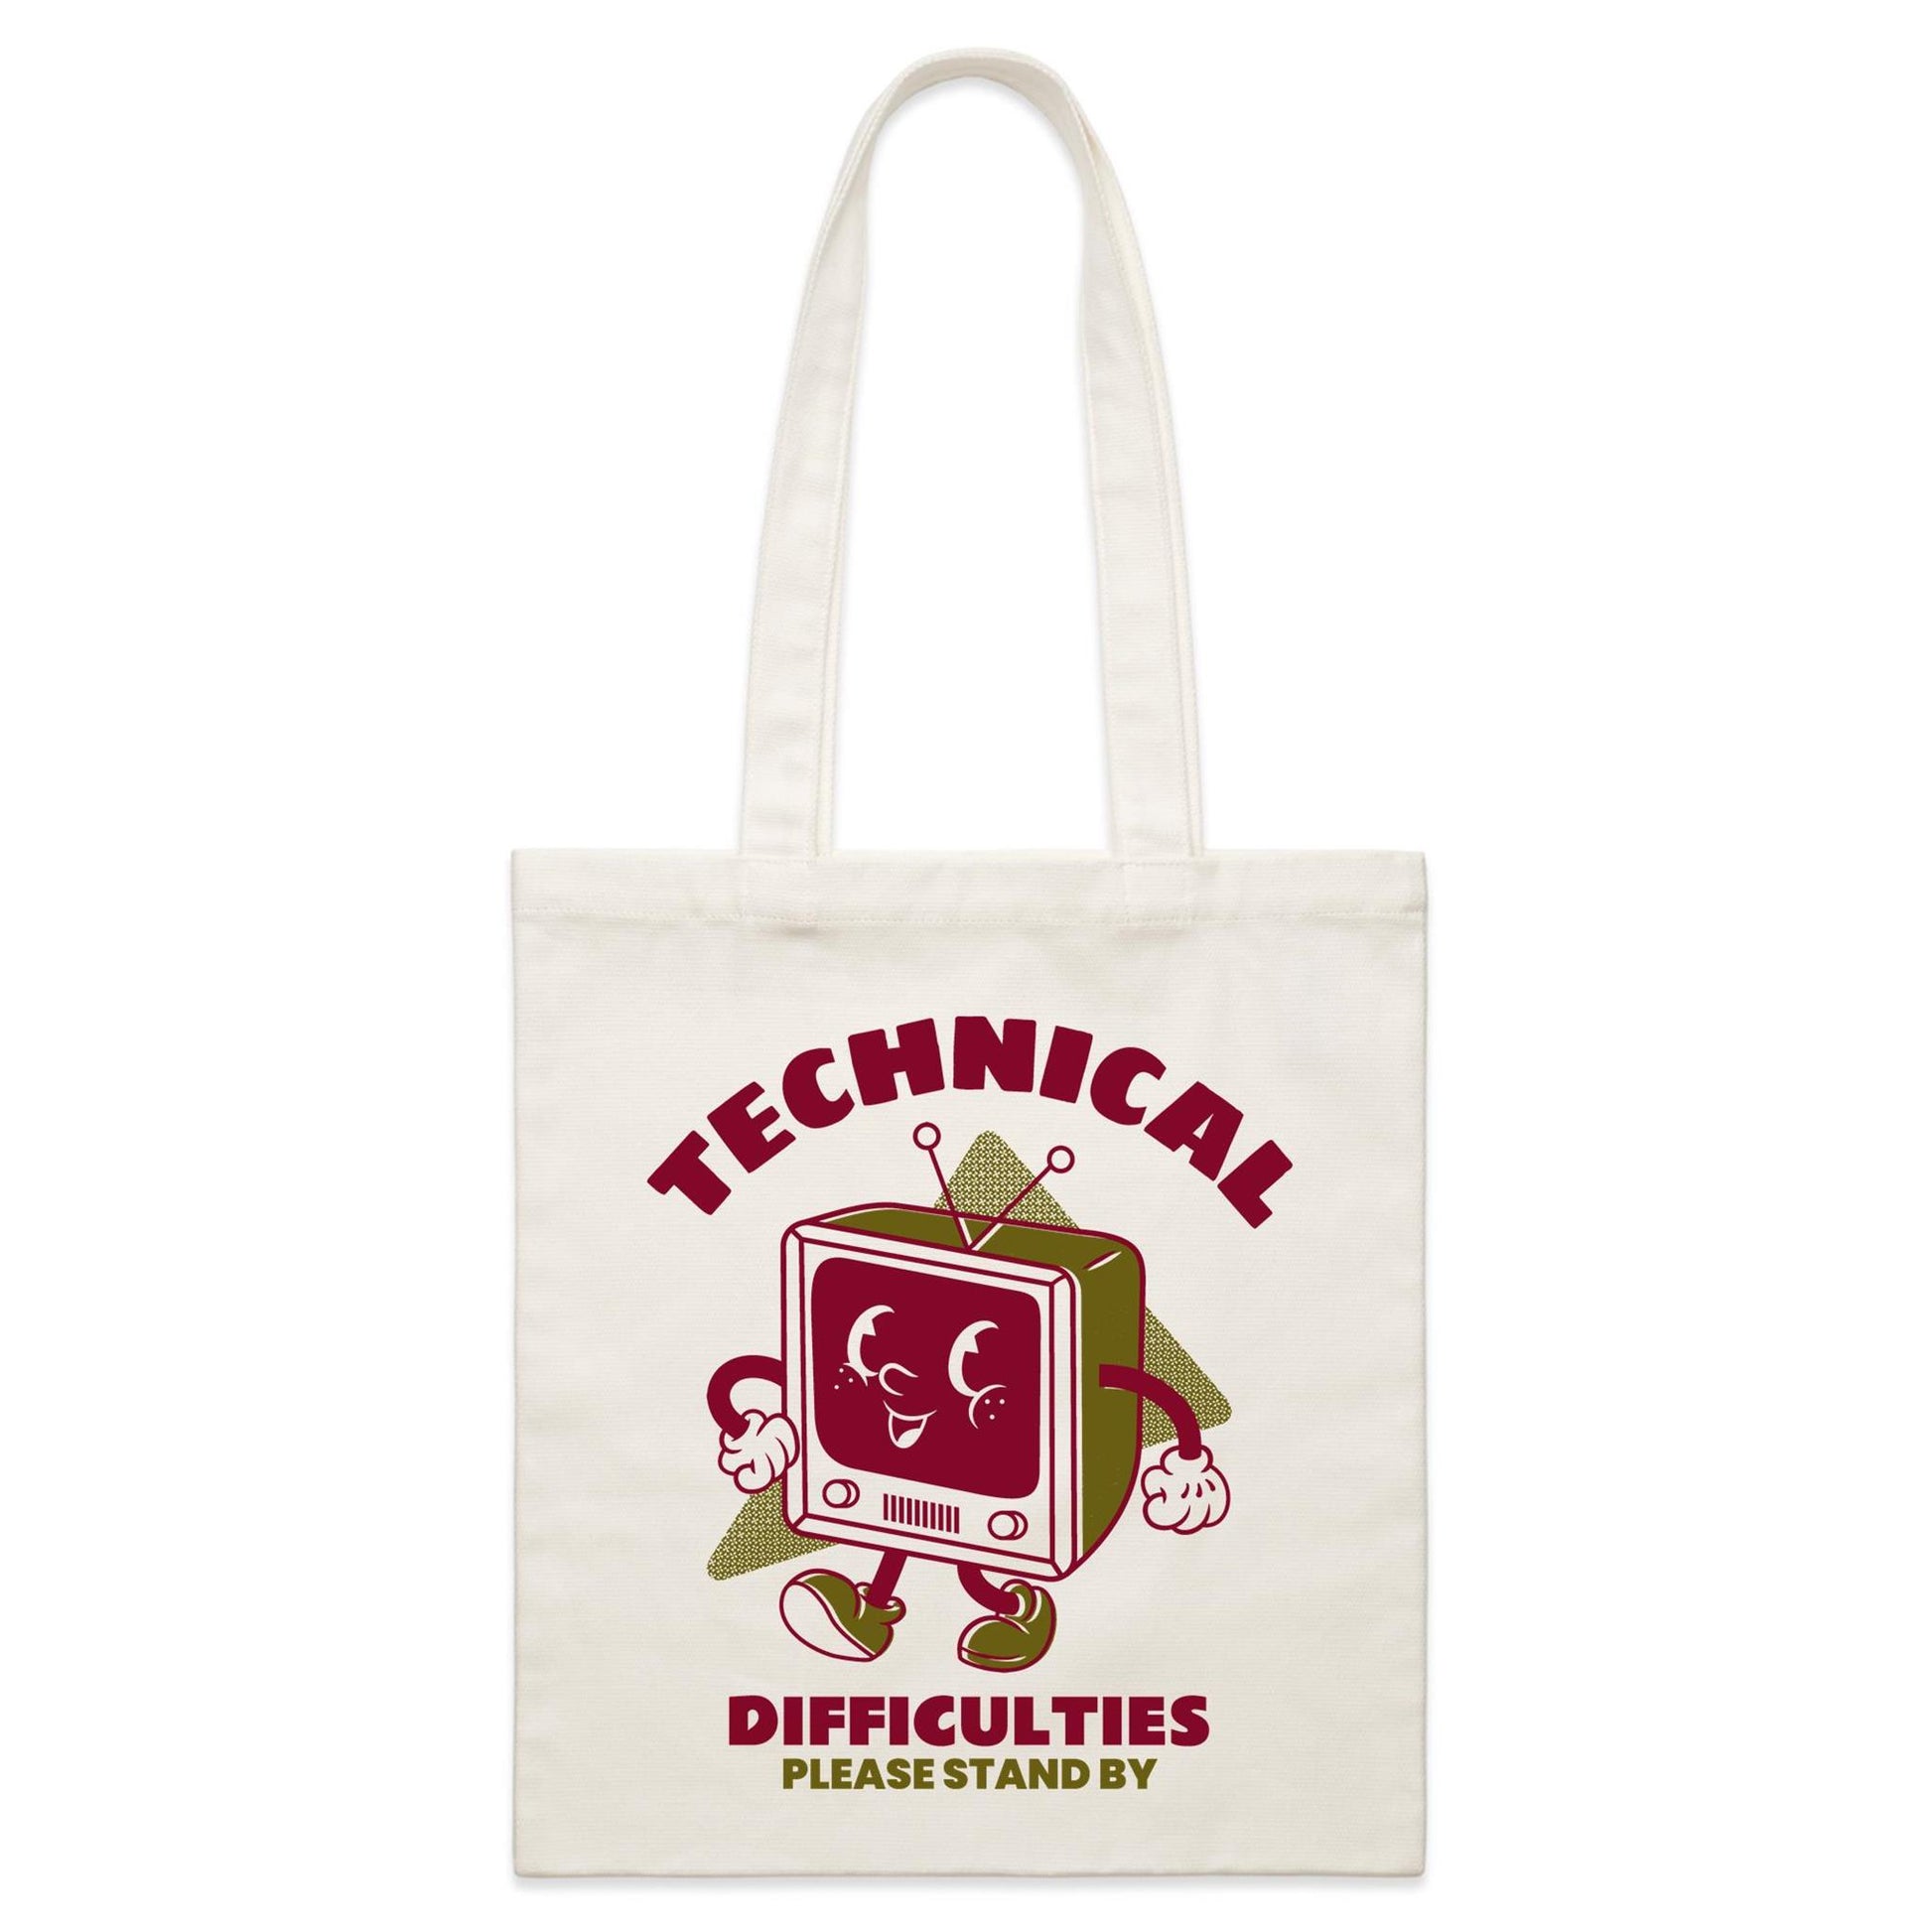 Retro TV Technical Difficulties - Parcel Canvas Tote Bag Default Title Parcel Tote Bag